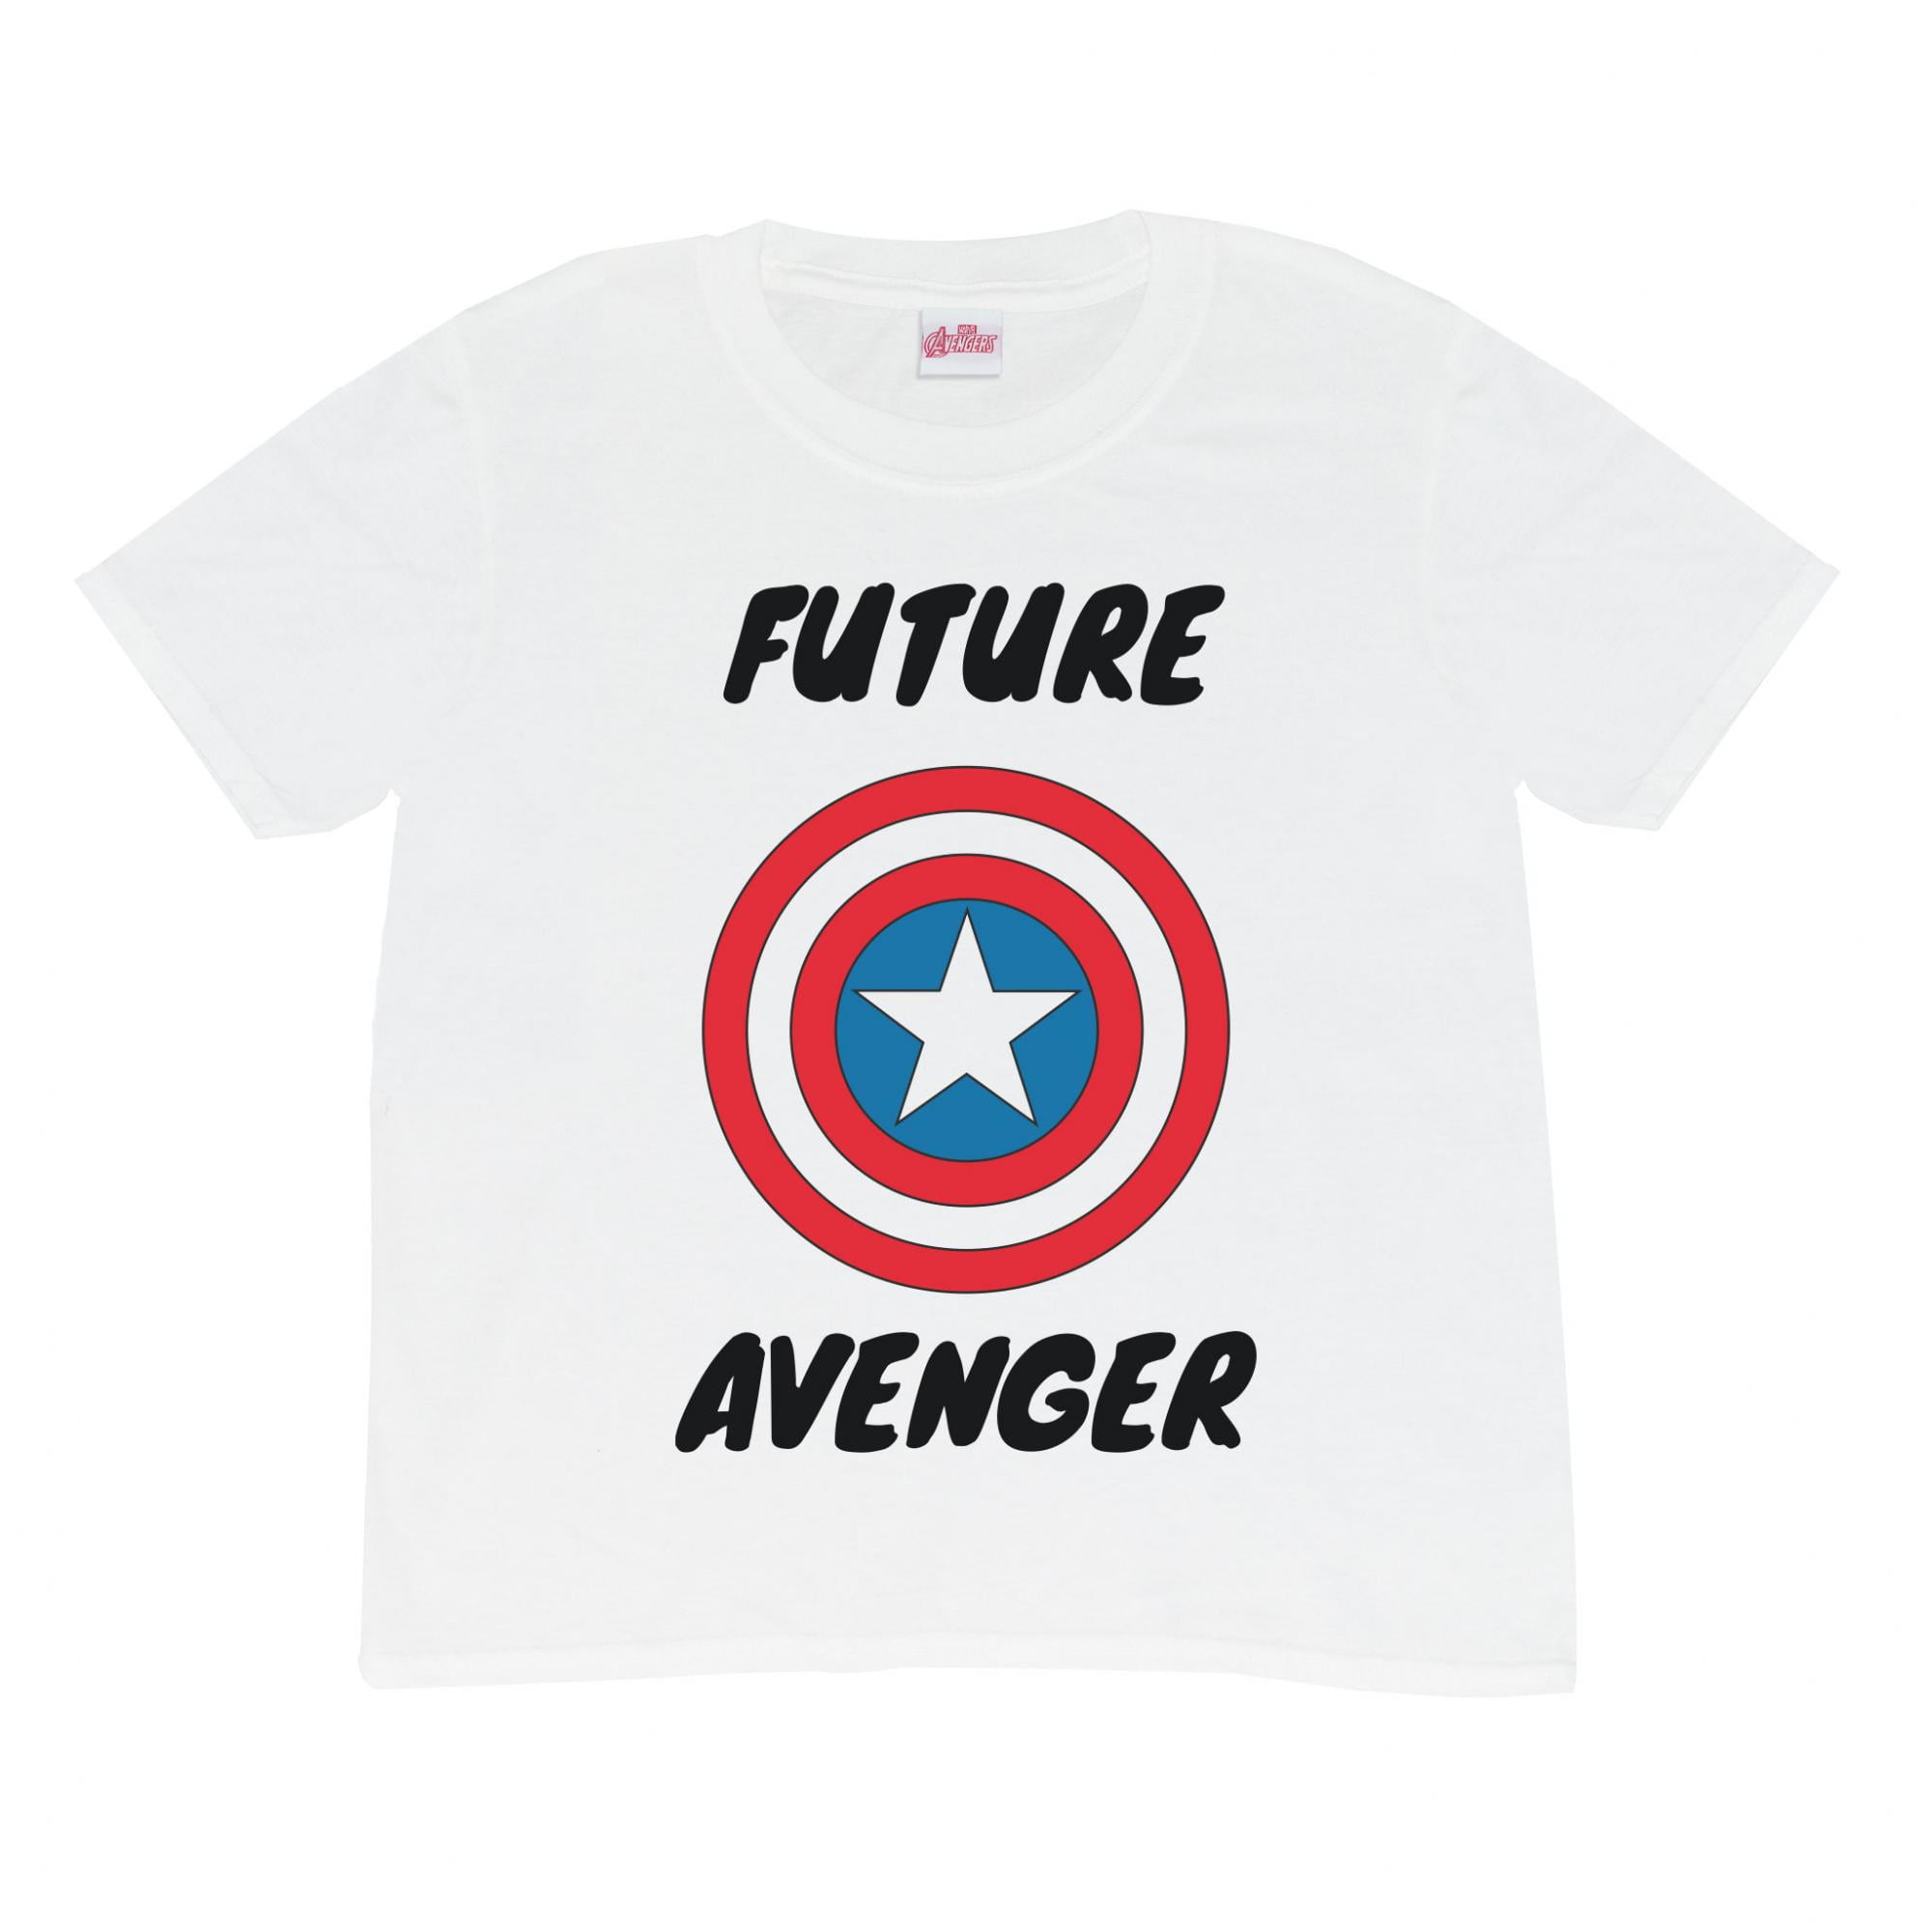 Avengers Assemble Shirt Marvel Avengers Tshirt Captain America Avengers Logo Shirt Avengers Symbol Tee